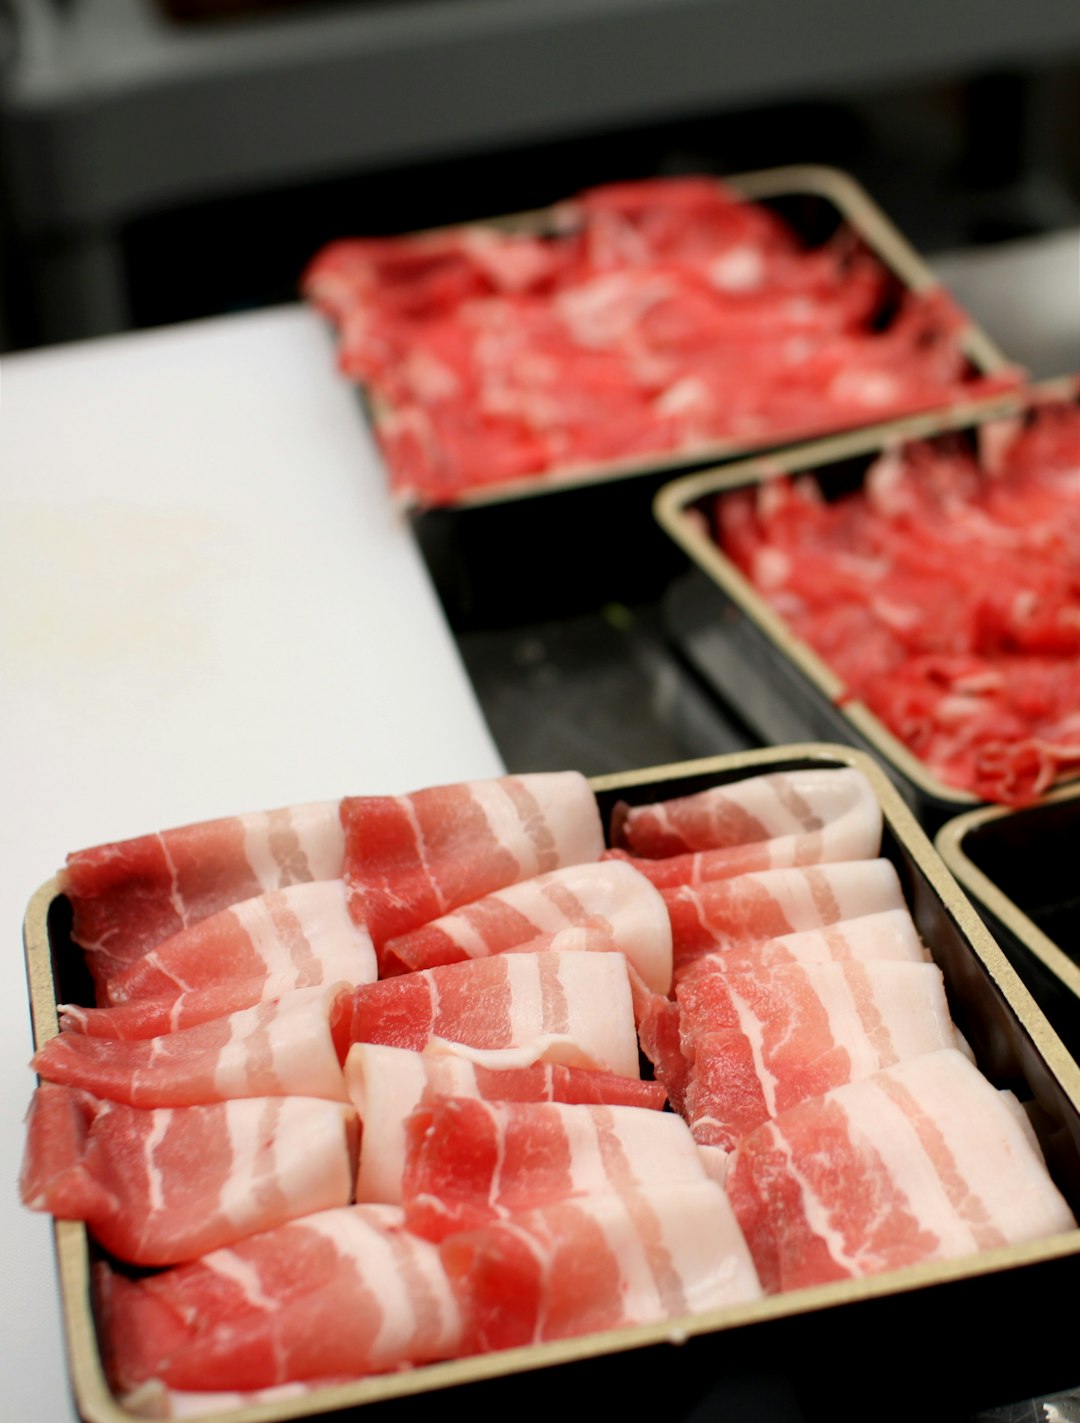 Pork belly, meat for shabusabu